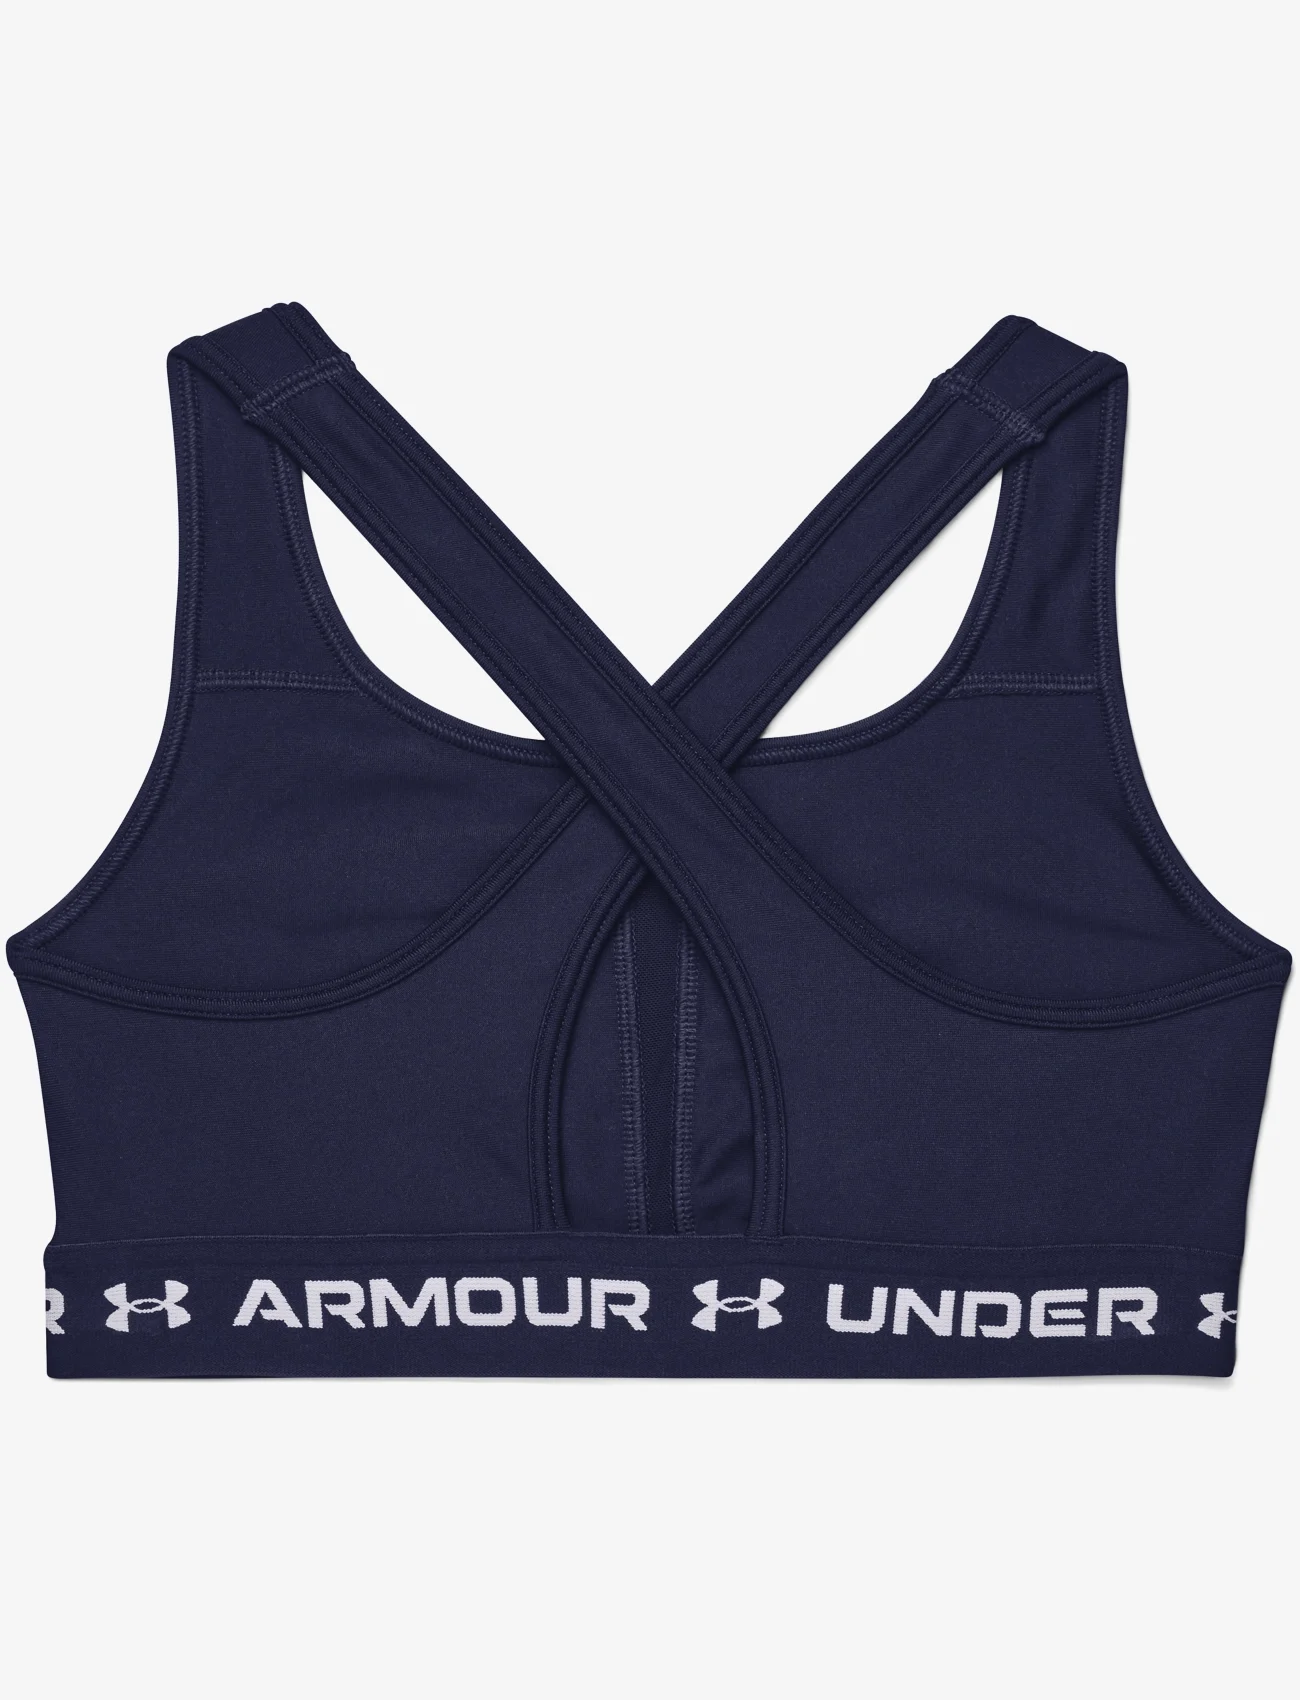 Under Armour - Crossback Mid Bra - sport bras: medium - blue - 1